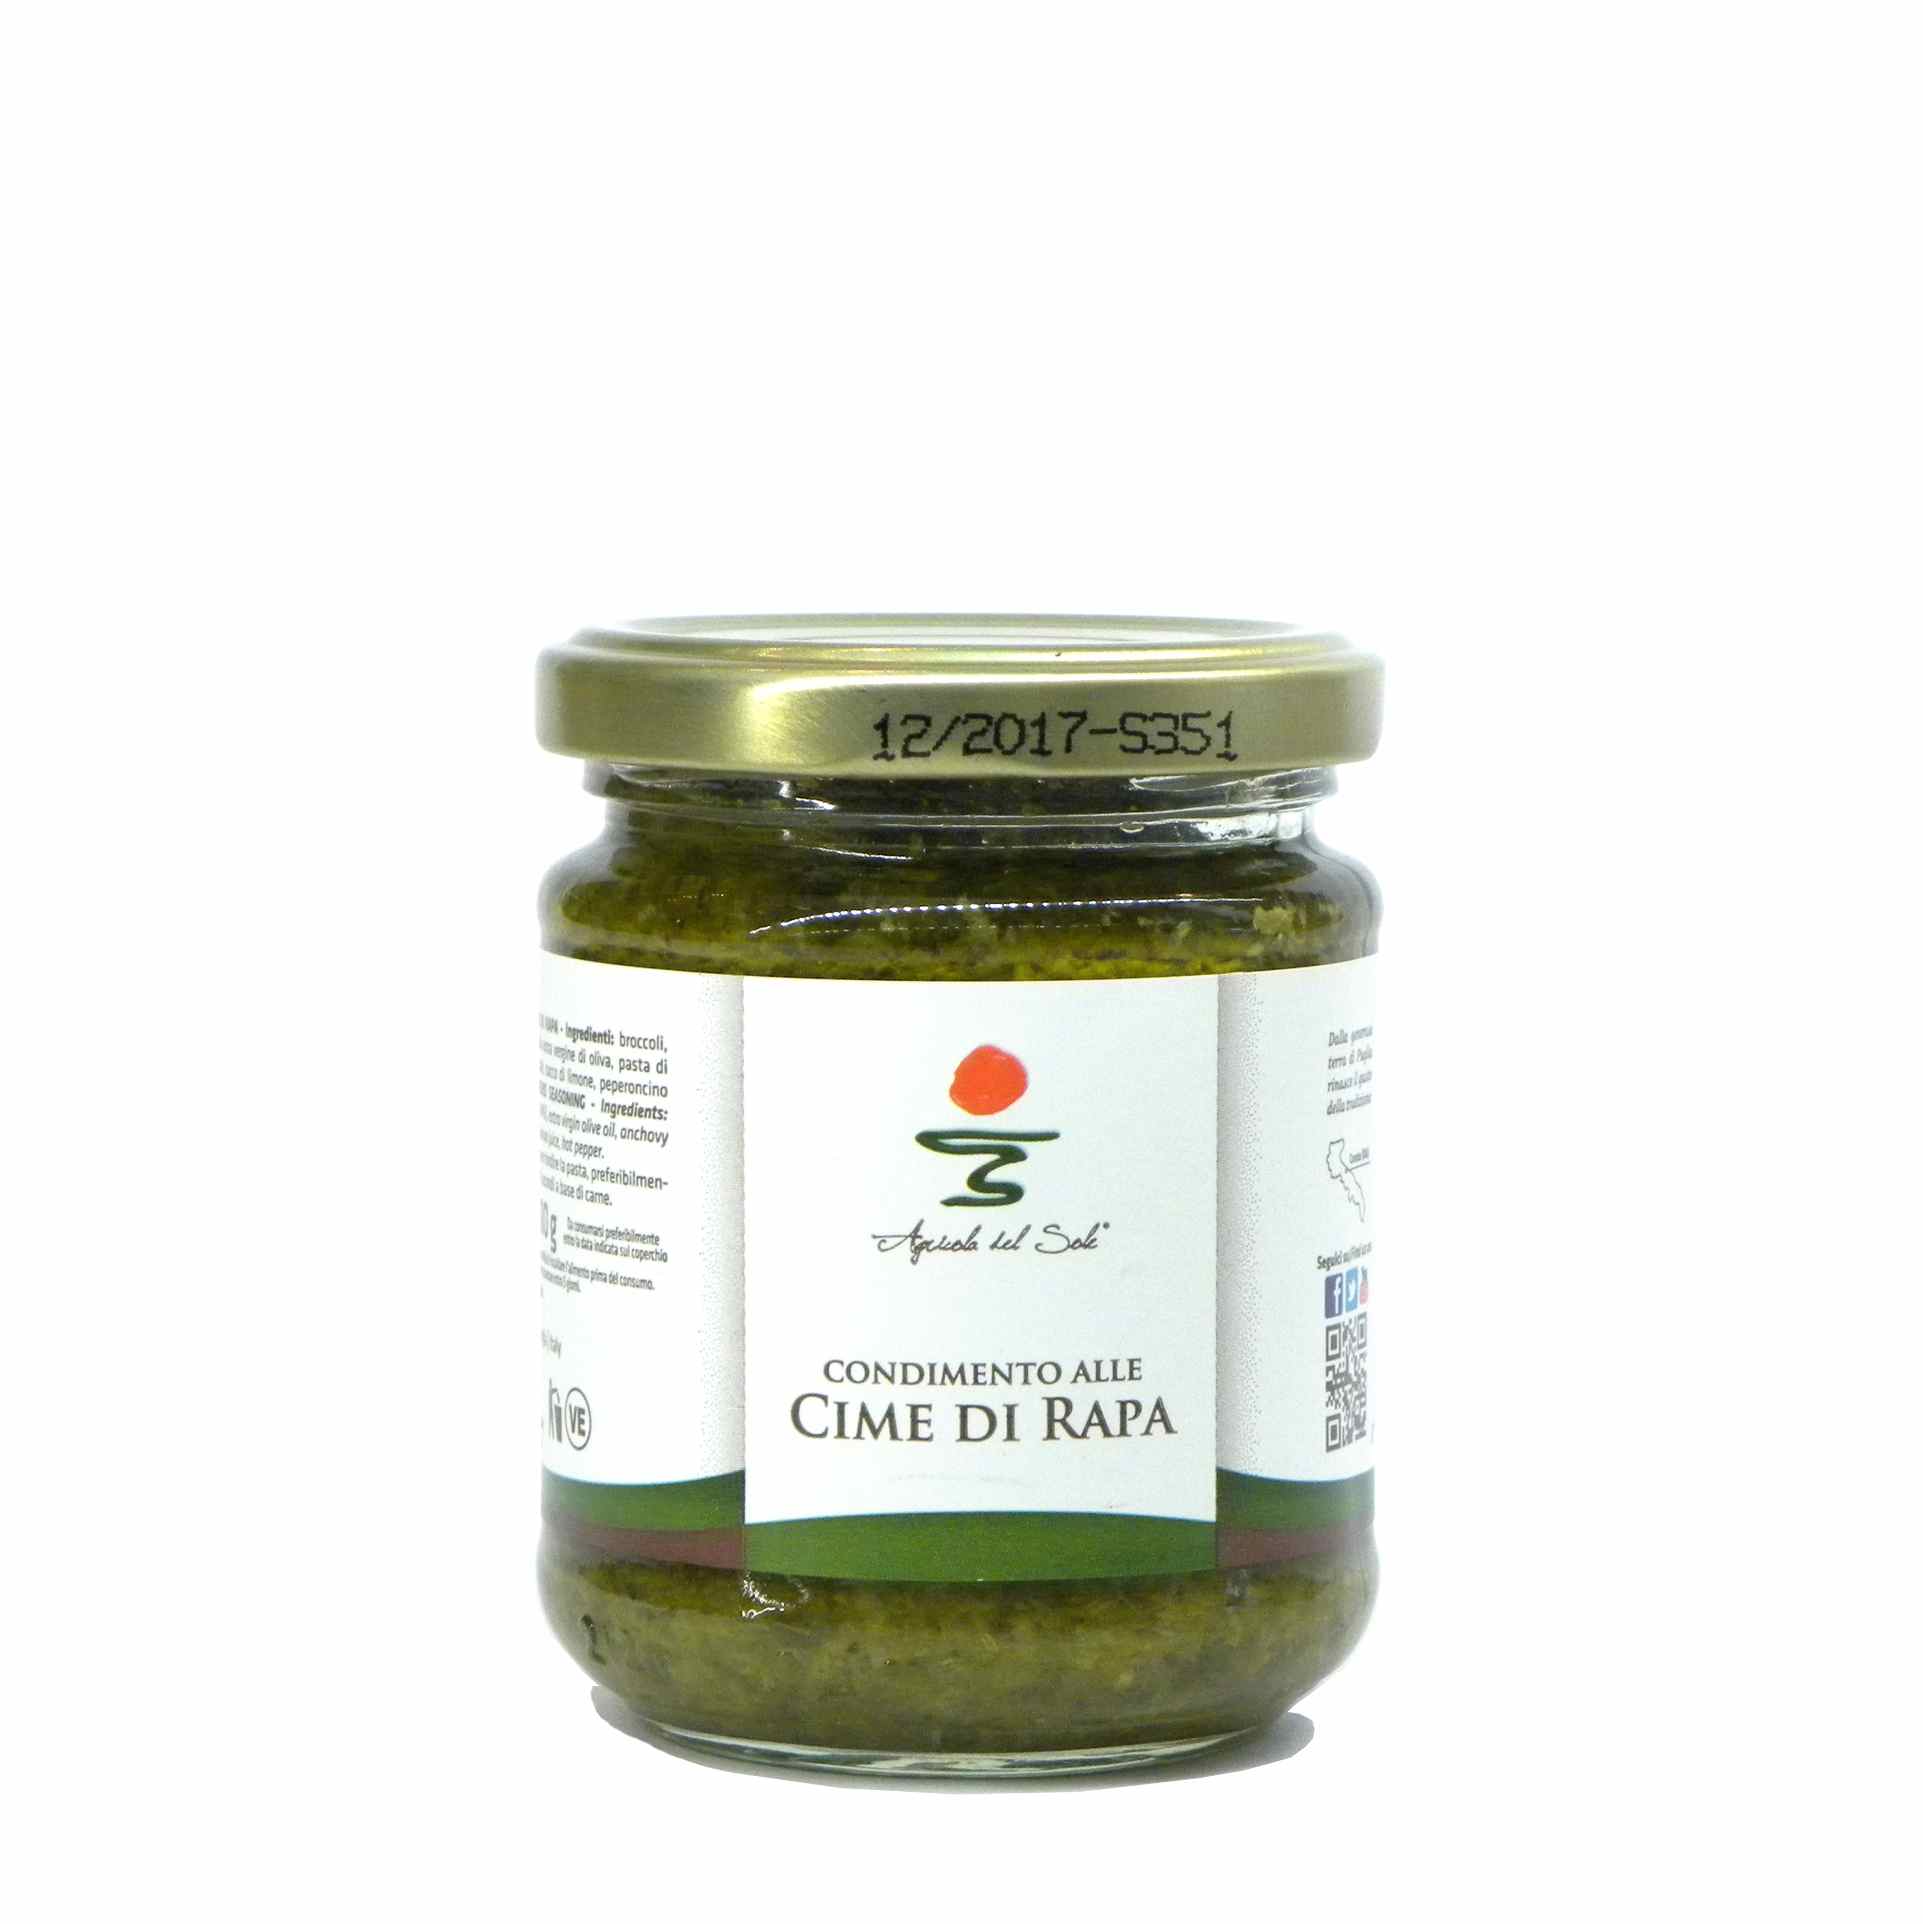 Agricola del Sole turnip green pasta sauce – Agricola del Sole condimento cime rapa – Gustorotondo – Italian food boutique